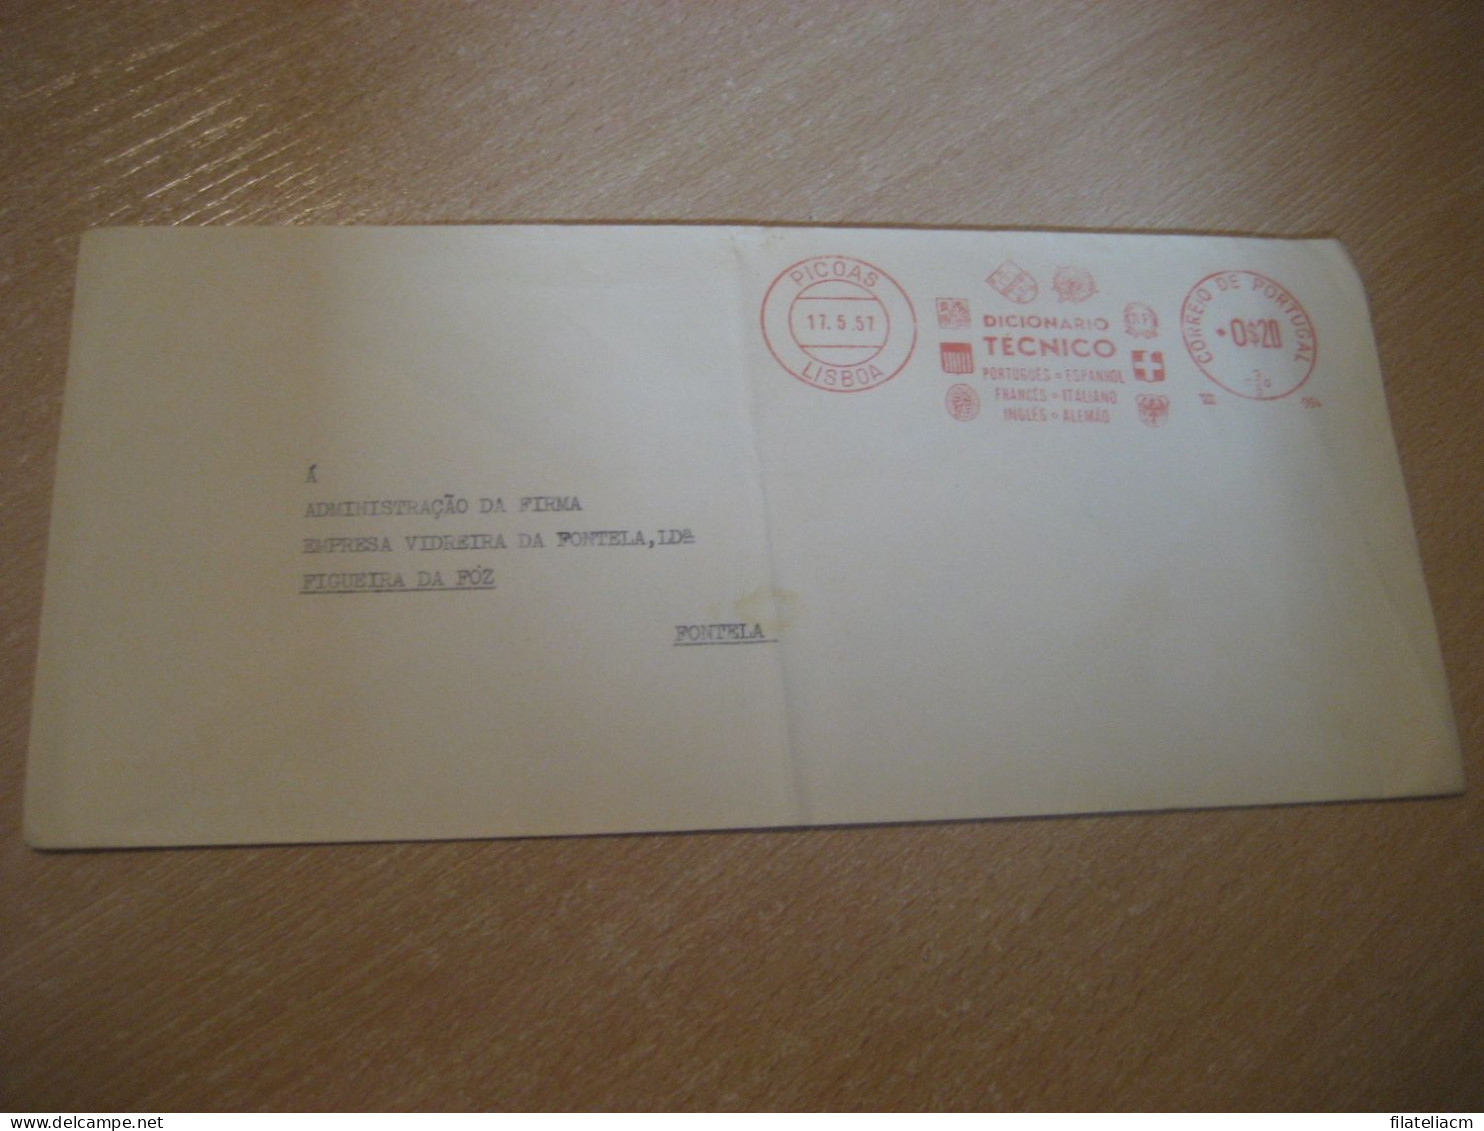 LISBOA 1957 To Figueira Da Foz Fontela Dicionario Tecnico Meter Mail Cancel Cover PORTUGAL - Briefe U. Dokumente